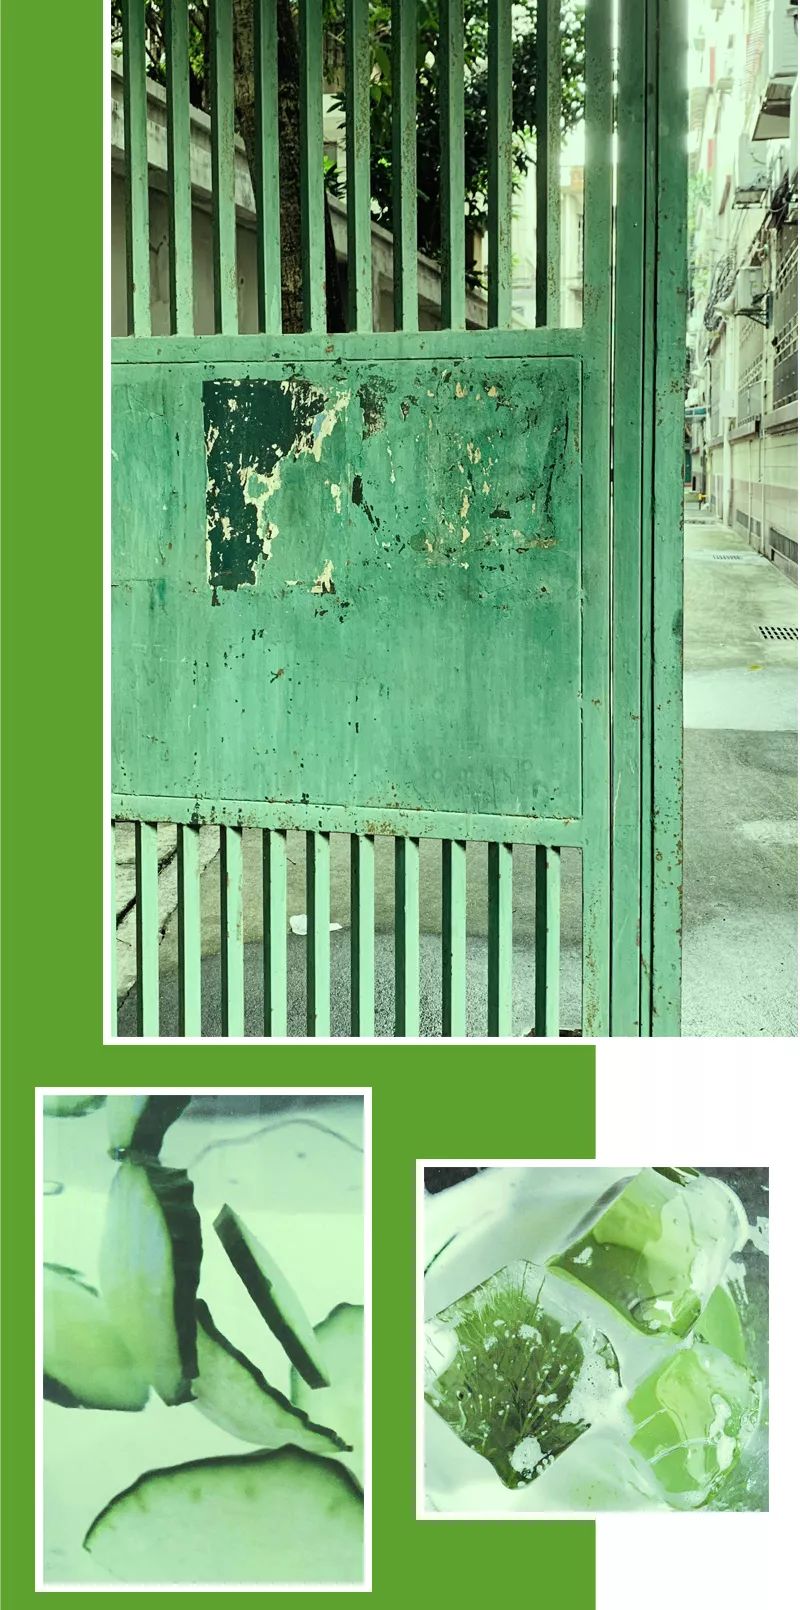 那九月便是 广州的绿 深得我心 锈迹斑斑的绿色铁门 我取名为古锈绿